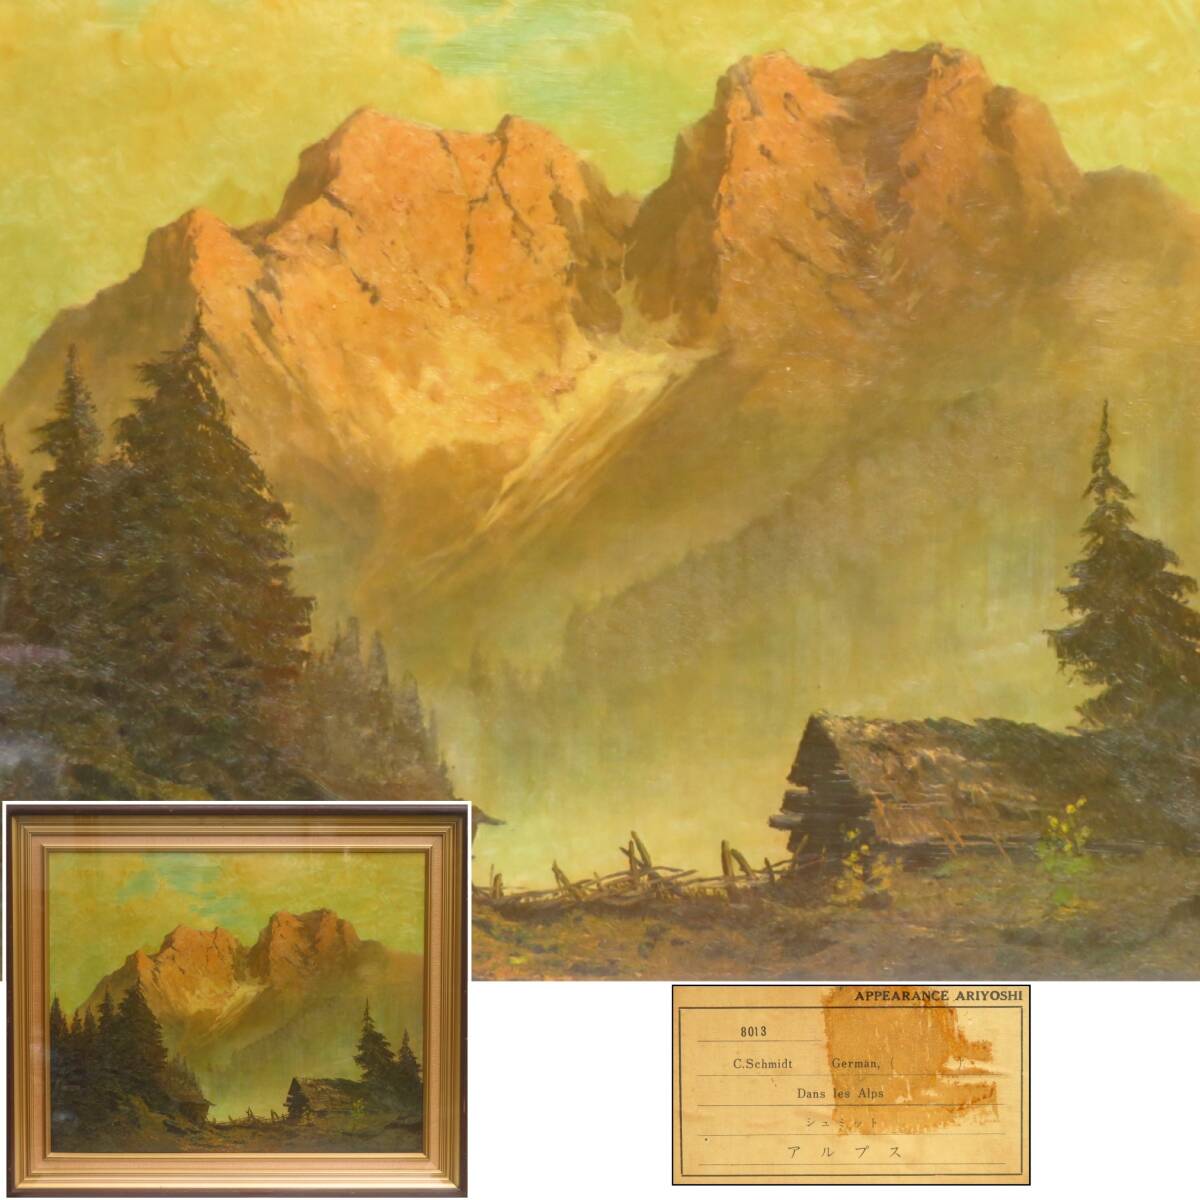 [SAKURAYA] عمل فني مضمون الأصالة [جبال الألب /C.Schmidt Schmidt] لوحة زيتية لوحة فنية جميلة منقوشة على الفن العتيق 74.5×88, تلوين, طلاء زيتي, طبيعة, رسم مناظر طبيعية